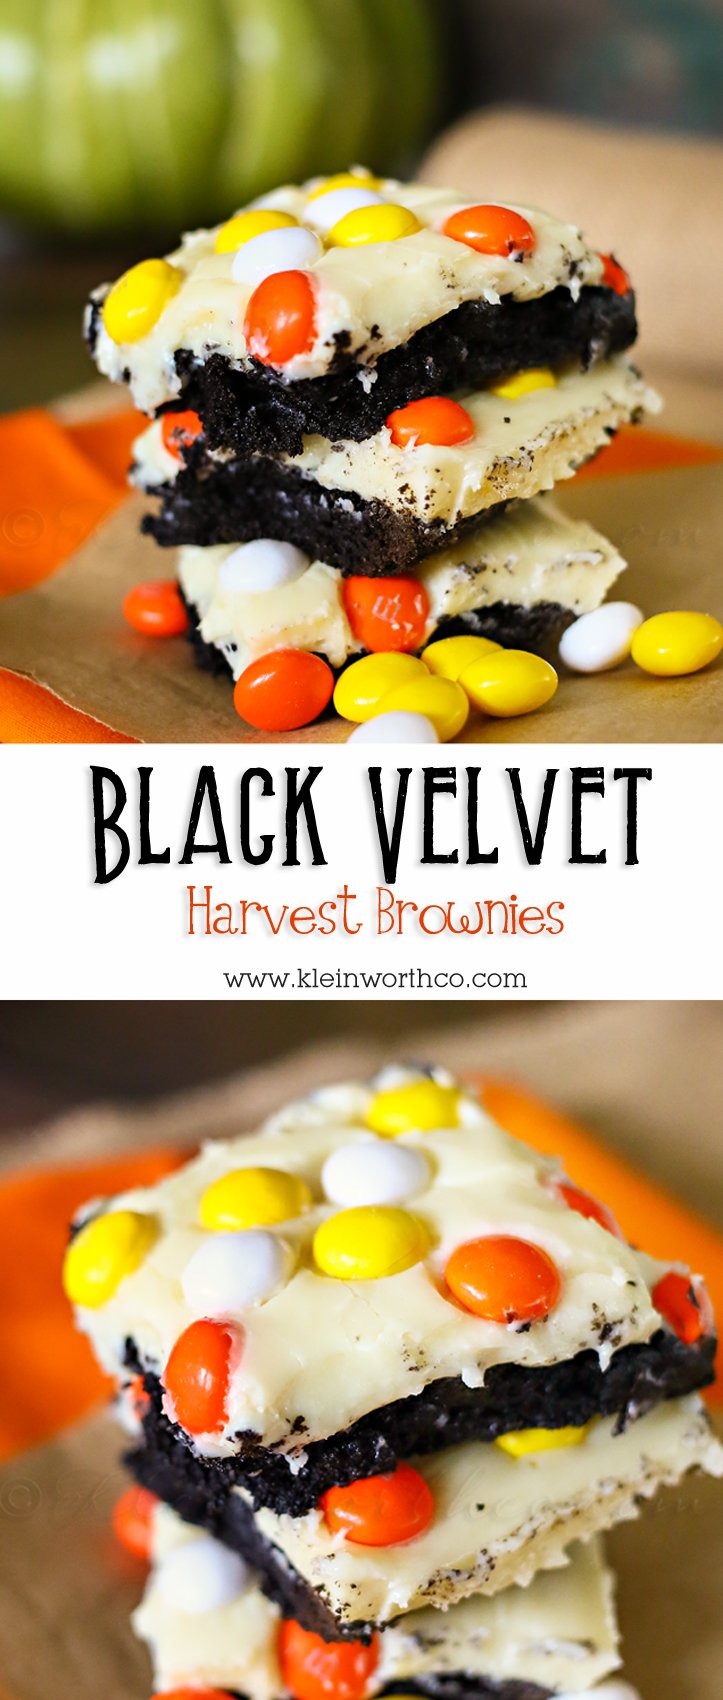 Black Velvet Harvest Brownies